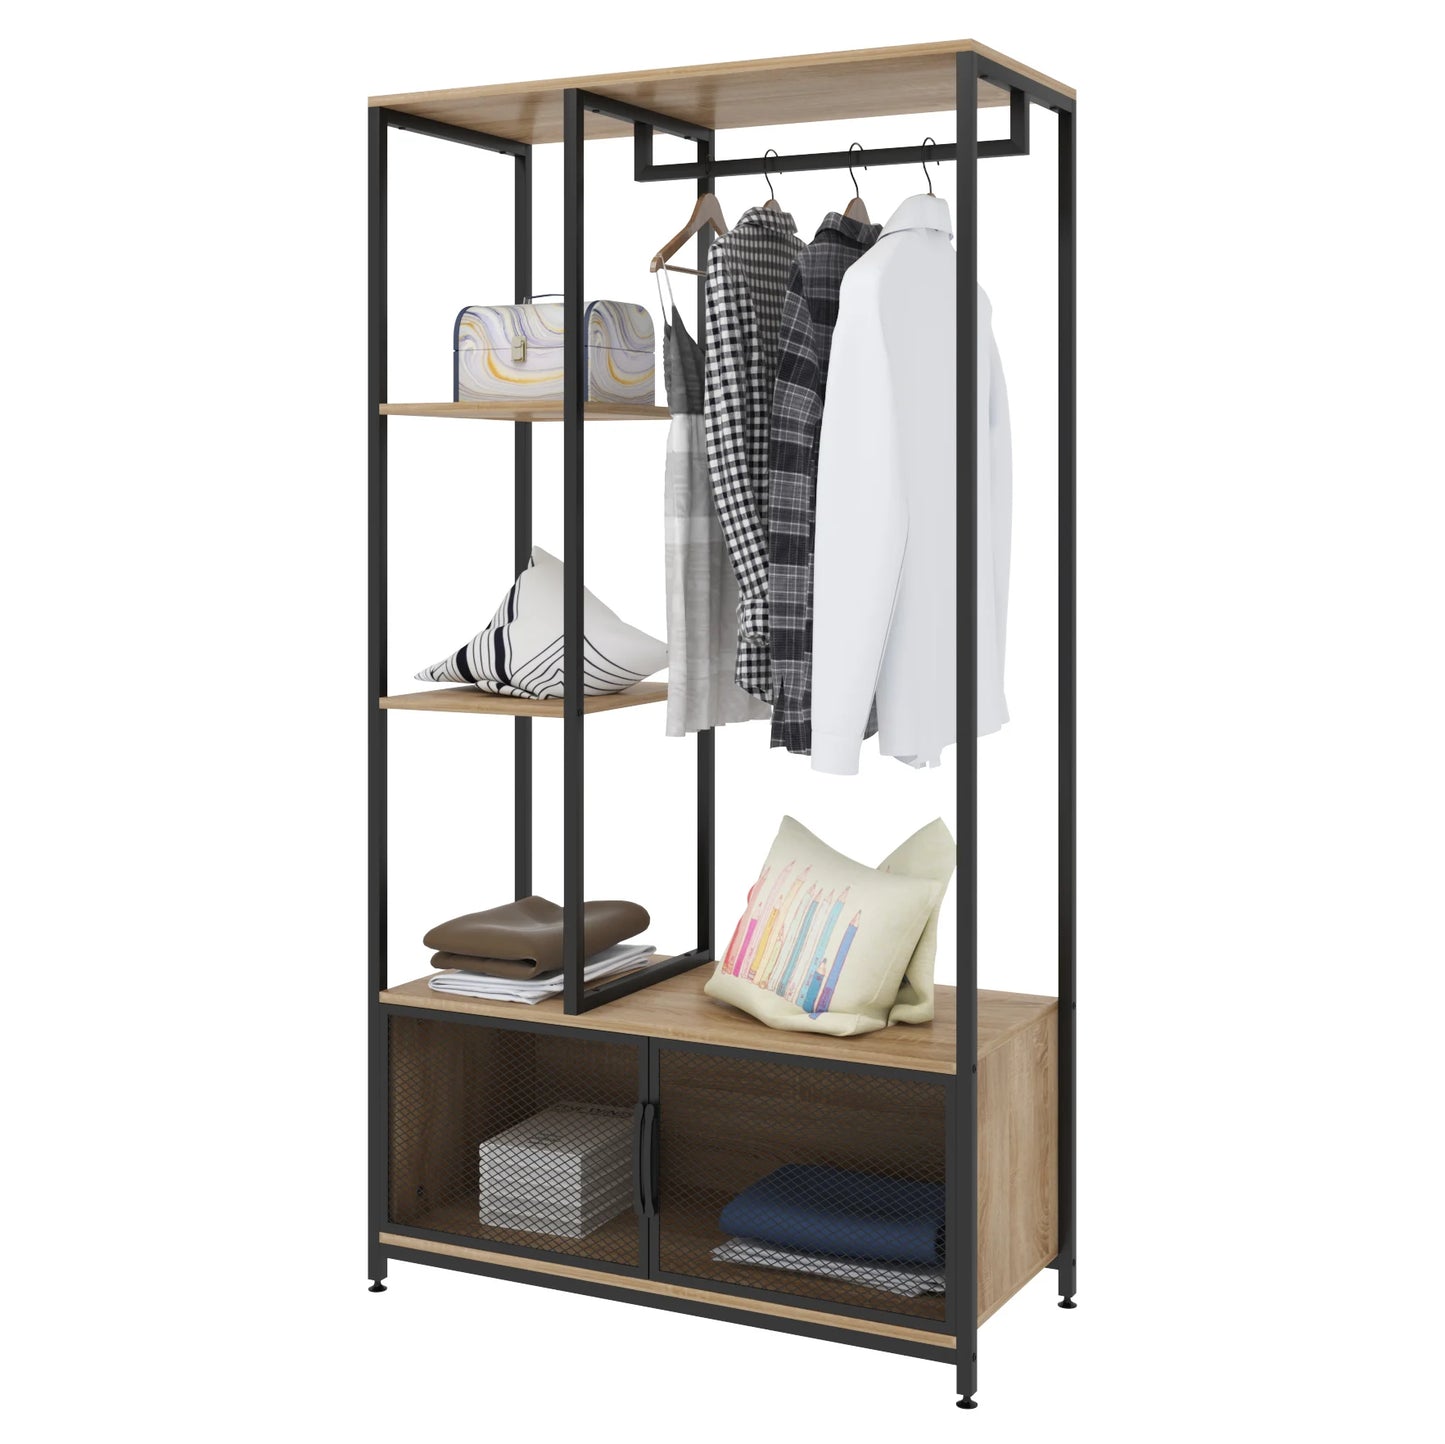 Kleiderständer mit Aufbewahrungsschrank - Stehender Garderobenständer aus Holz und Metall für Schlafzimmer - Unique Outlet